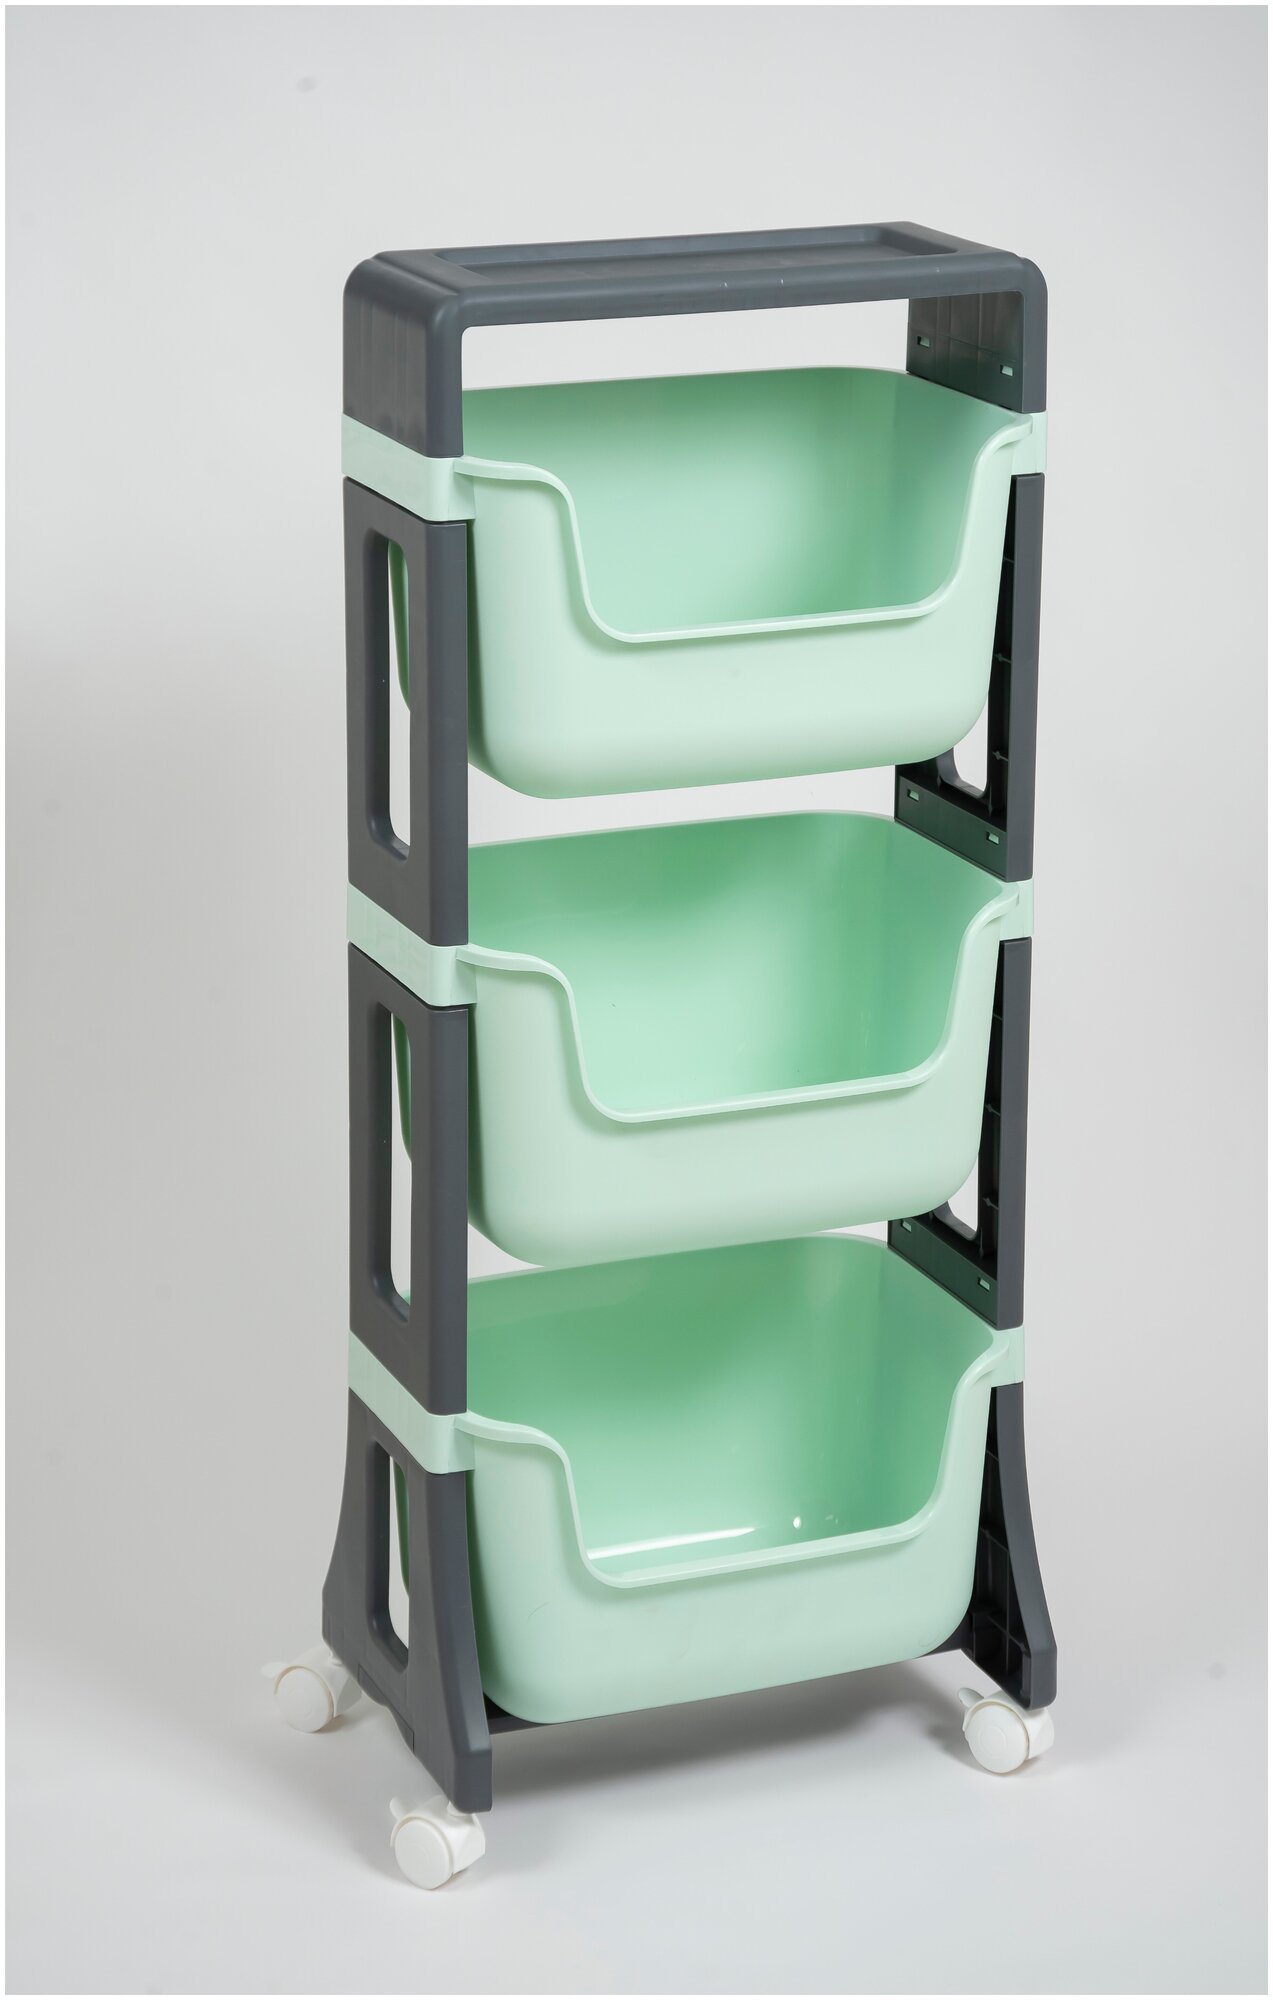 Этажерка на колесиках Джуниор 3 яруса, цвет мятный / детский пластиковый органайзер для хранения / подставка напольная на колесах для кухни и ванной